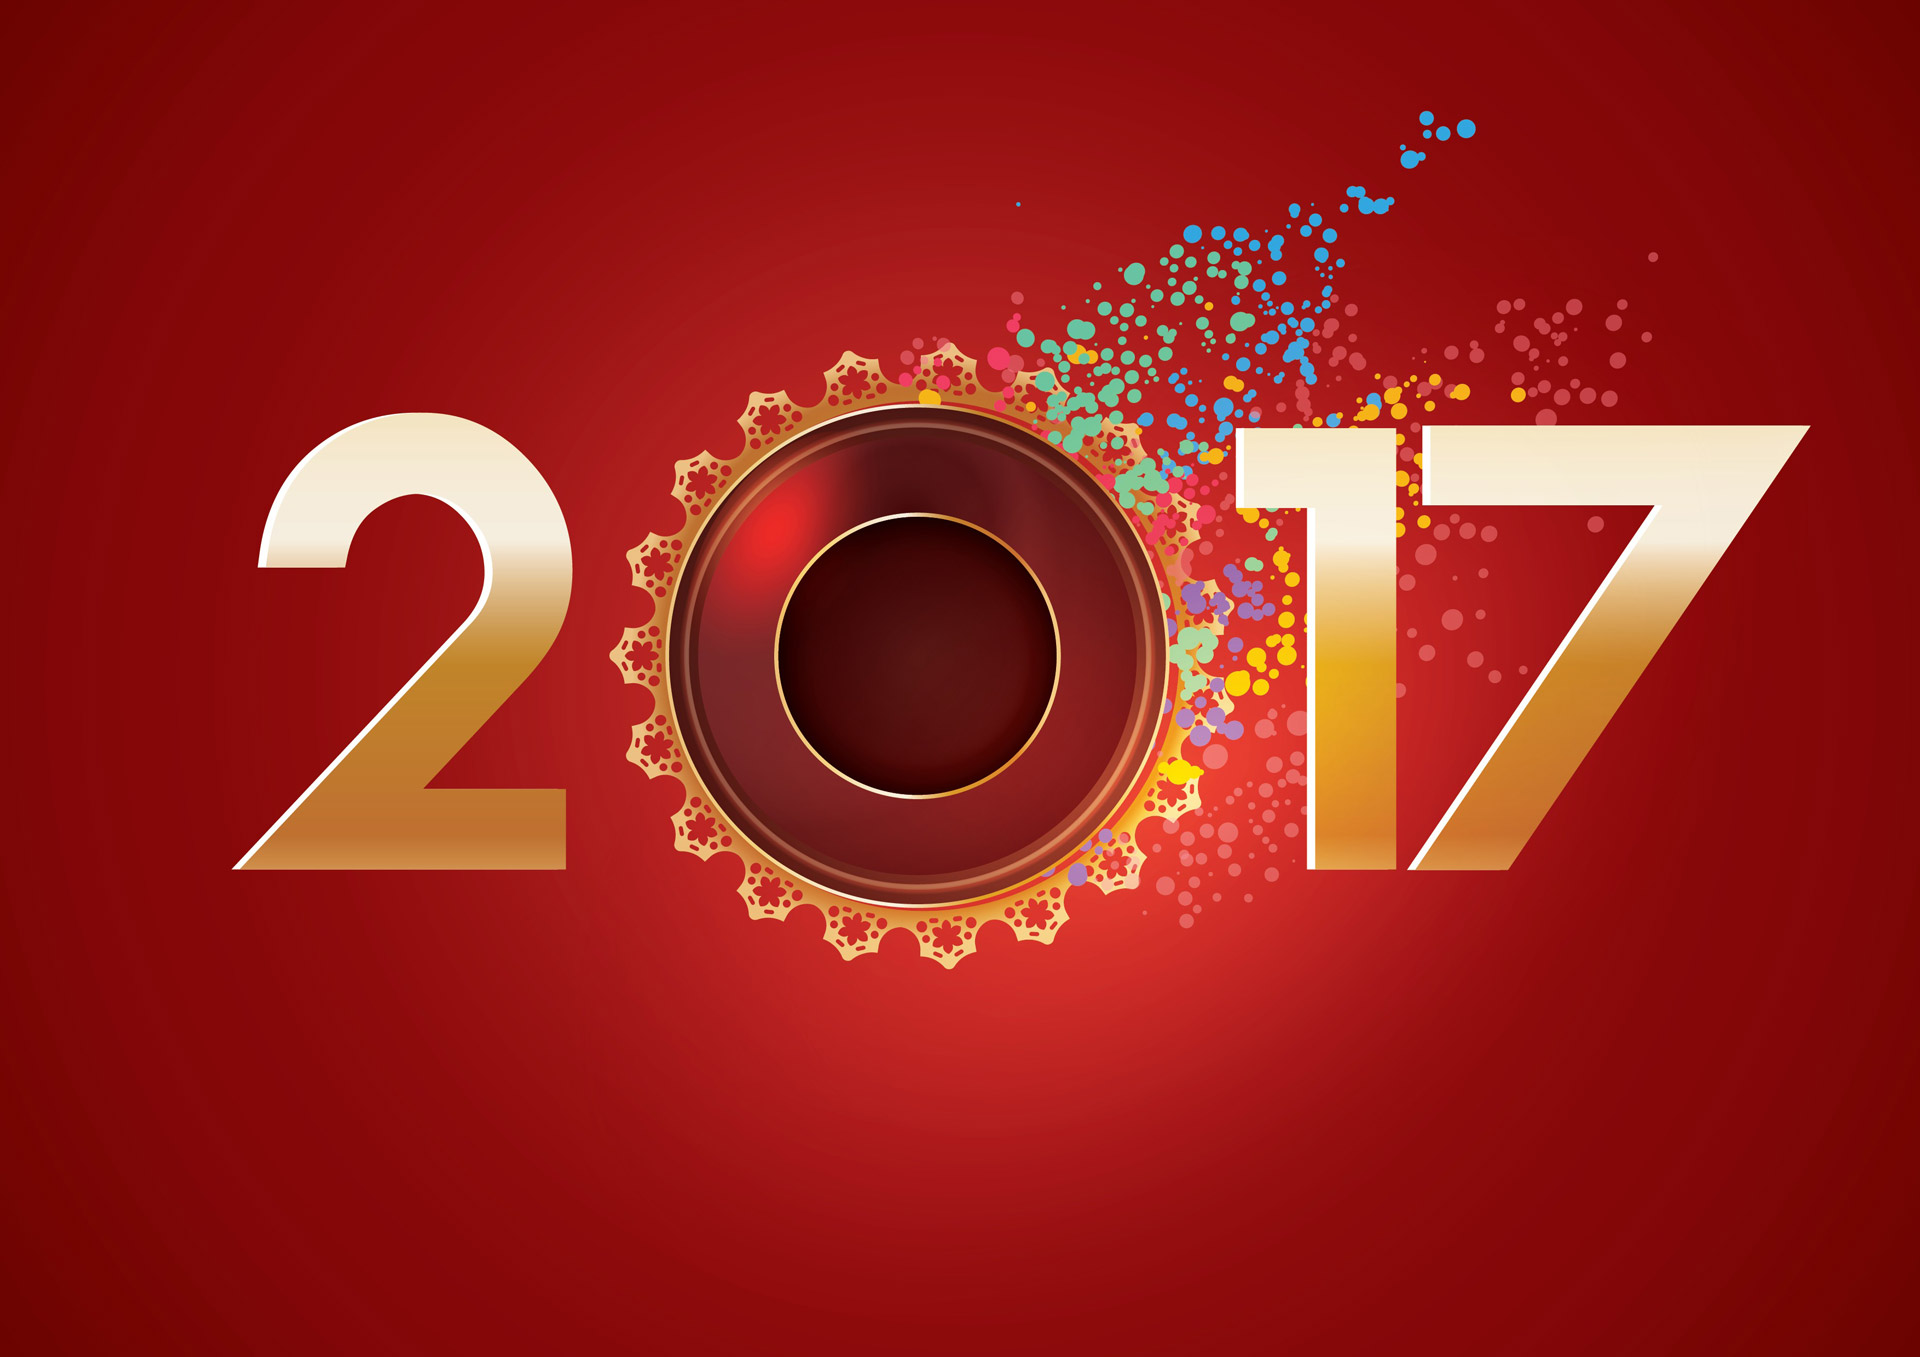 Hình nền chúc mừng năm mới 2017 full HD ấn tượng - Hình 13